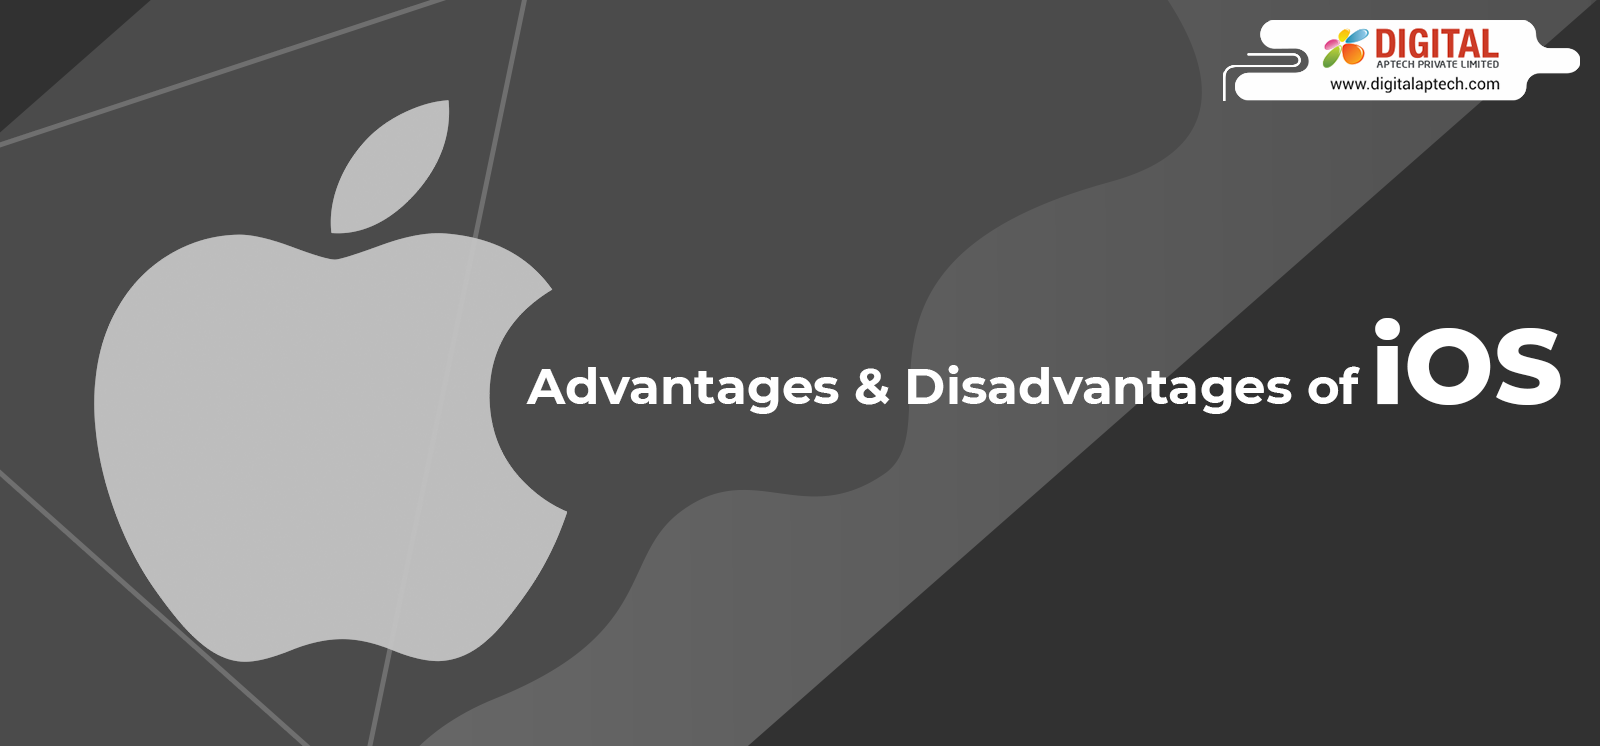 apple advantages and disadvantages